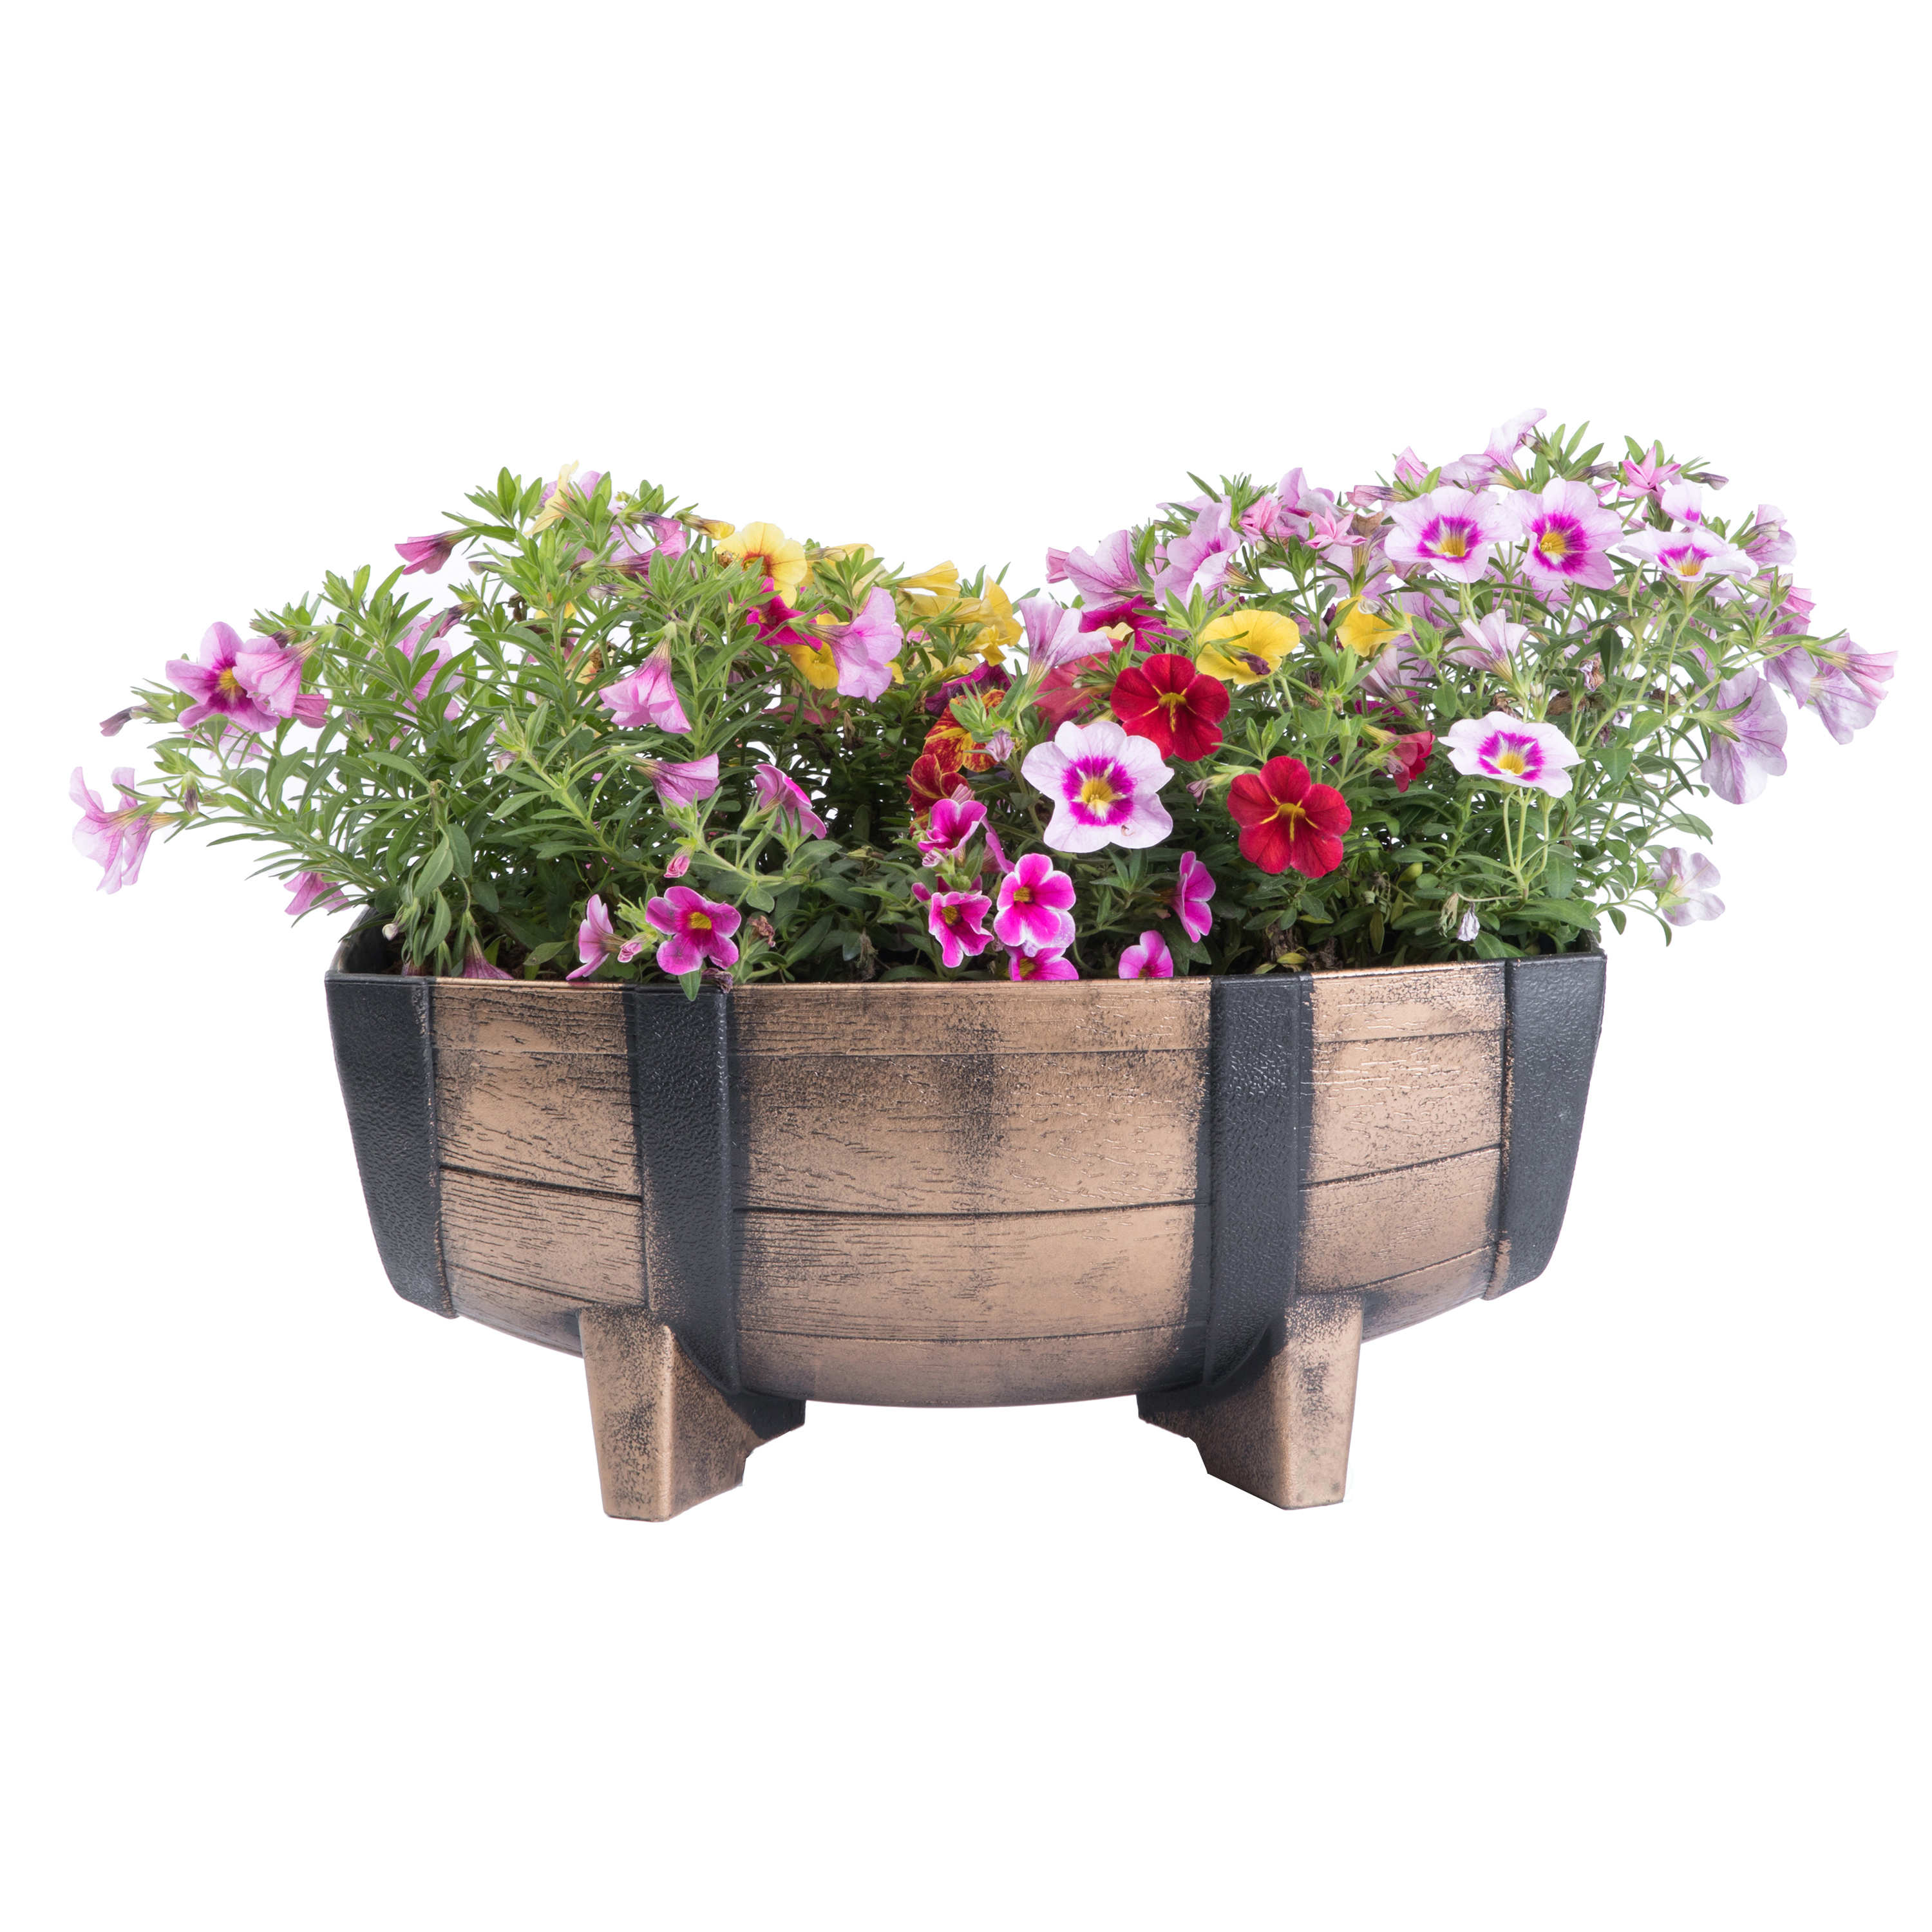 Rustic Wood- Look Plastic Half Barrel Flower Pot Garden Planter, Pack Of 2